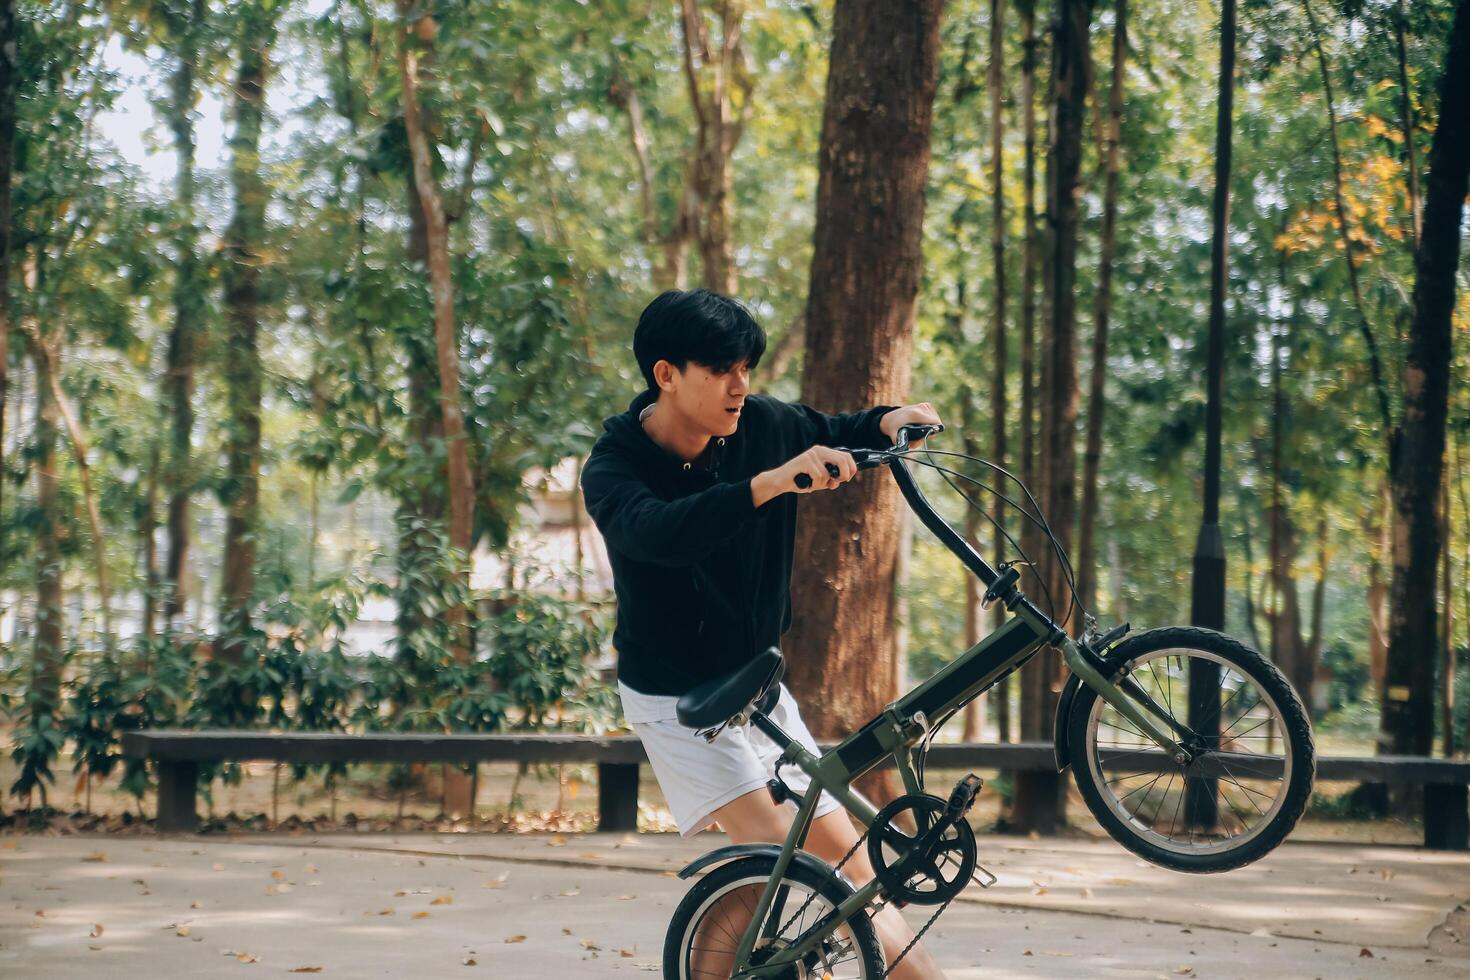 stilig Lycklig ung man med cykel på en stad gata, aktiva livsstil, människor begrepp foto